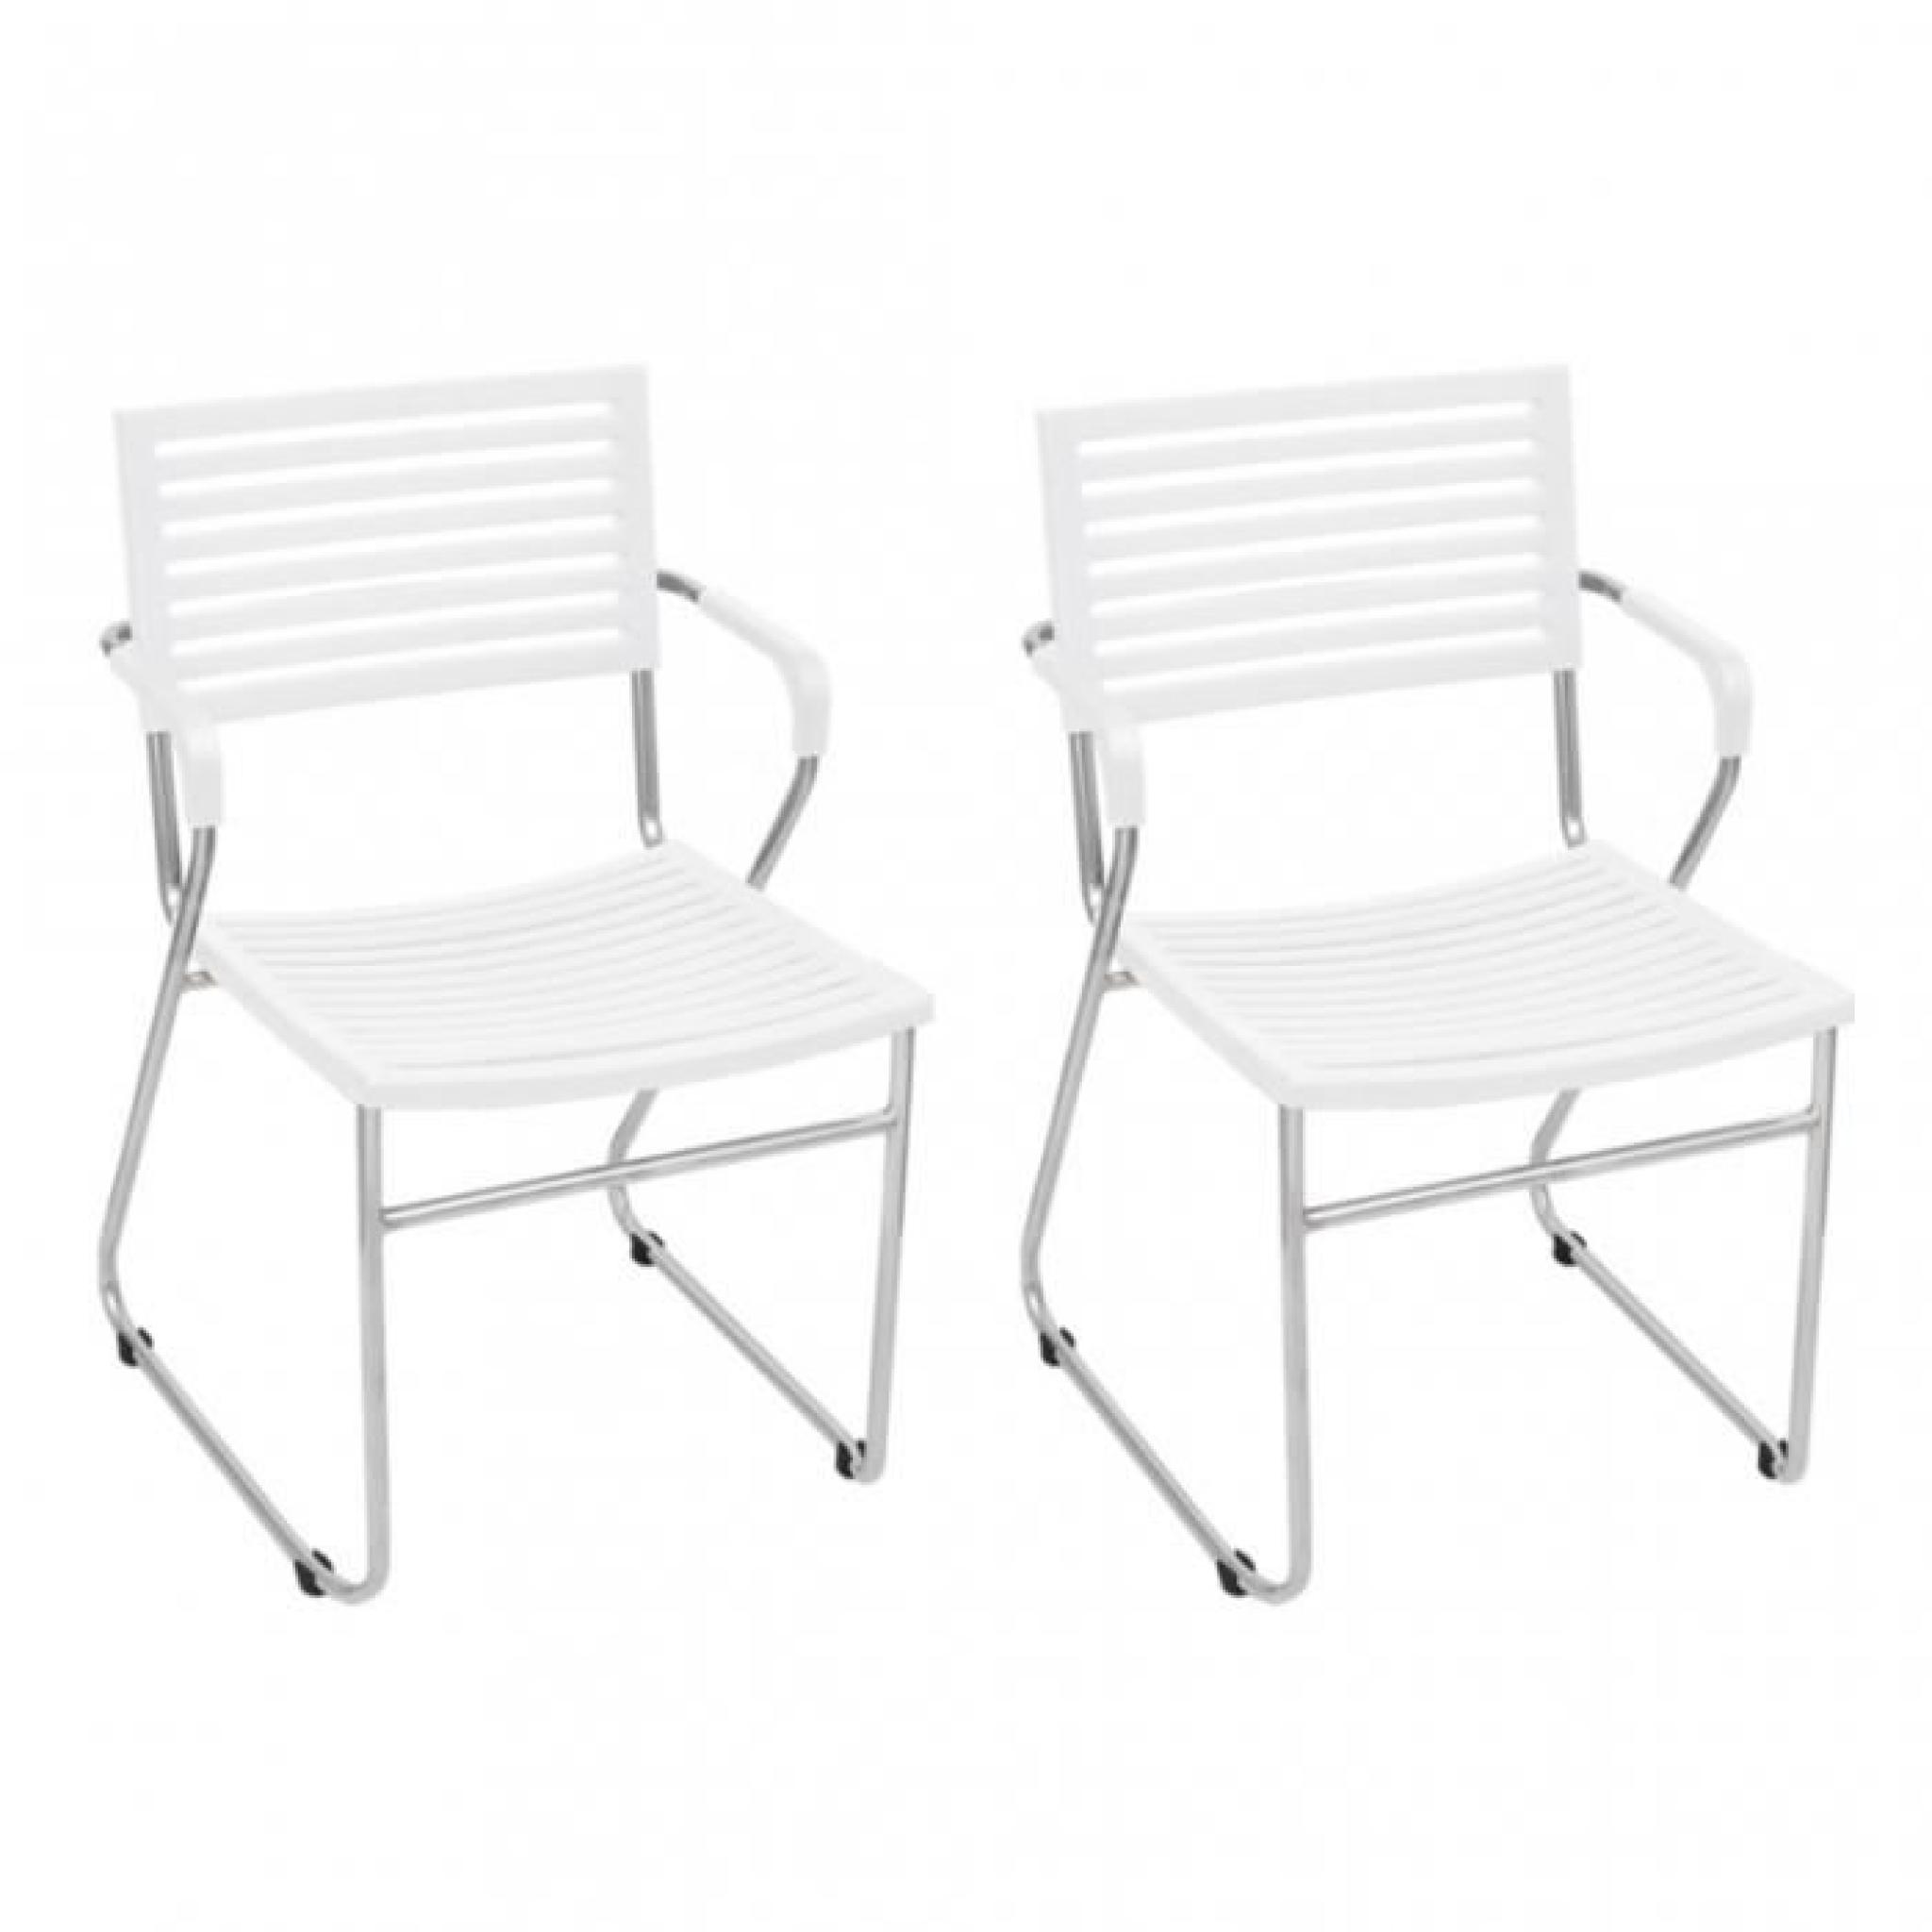 Ce set de chaises empilables avec accoudoirs est un bon choix pour votre salle à manger ou bureau. Avec son design simple et ergo...